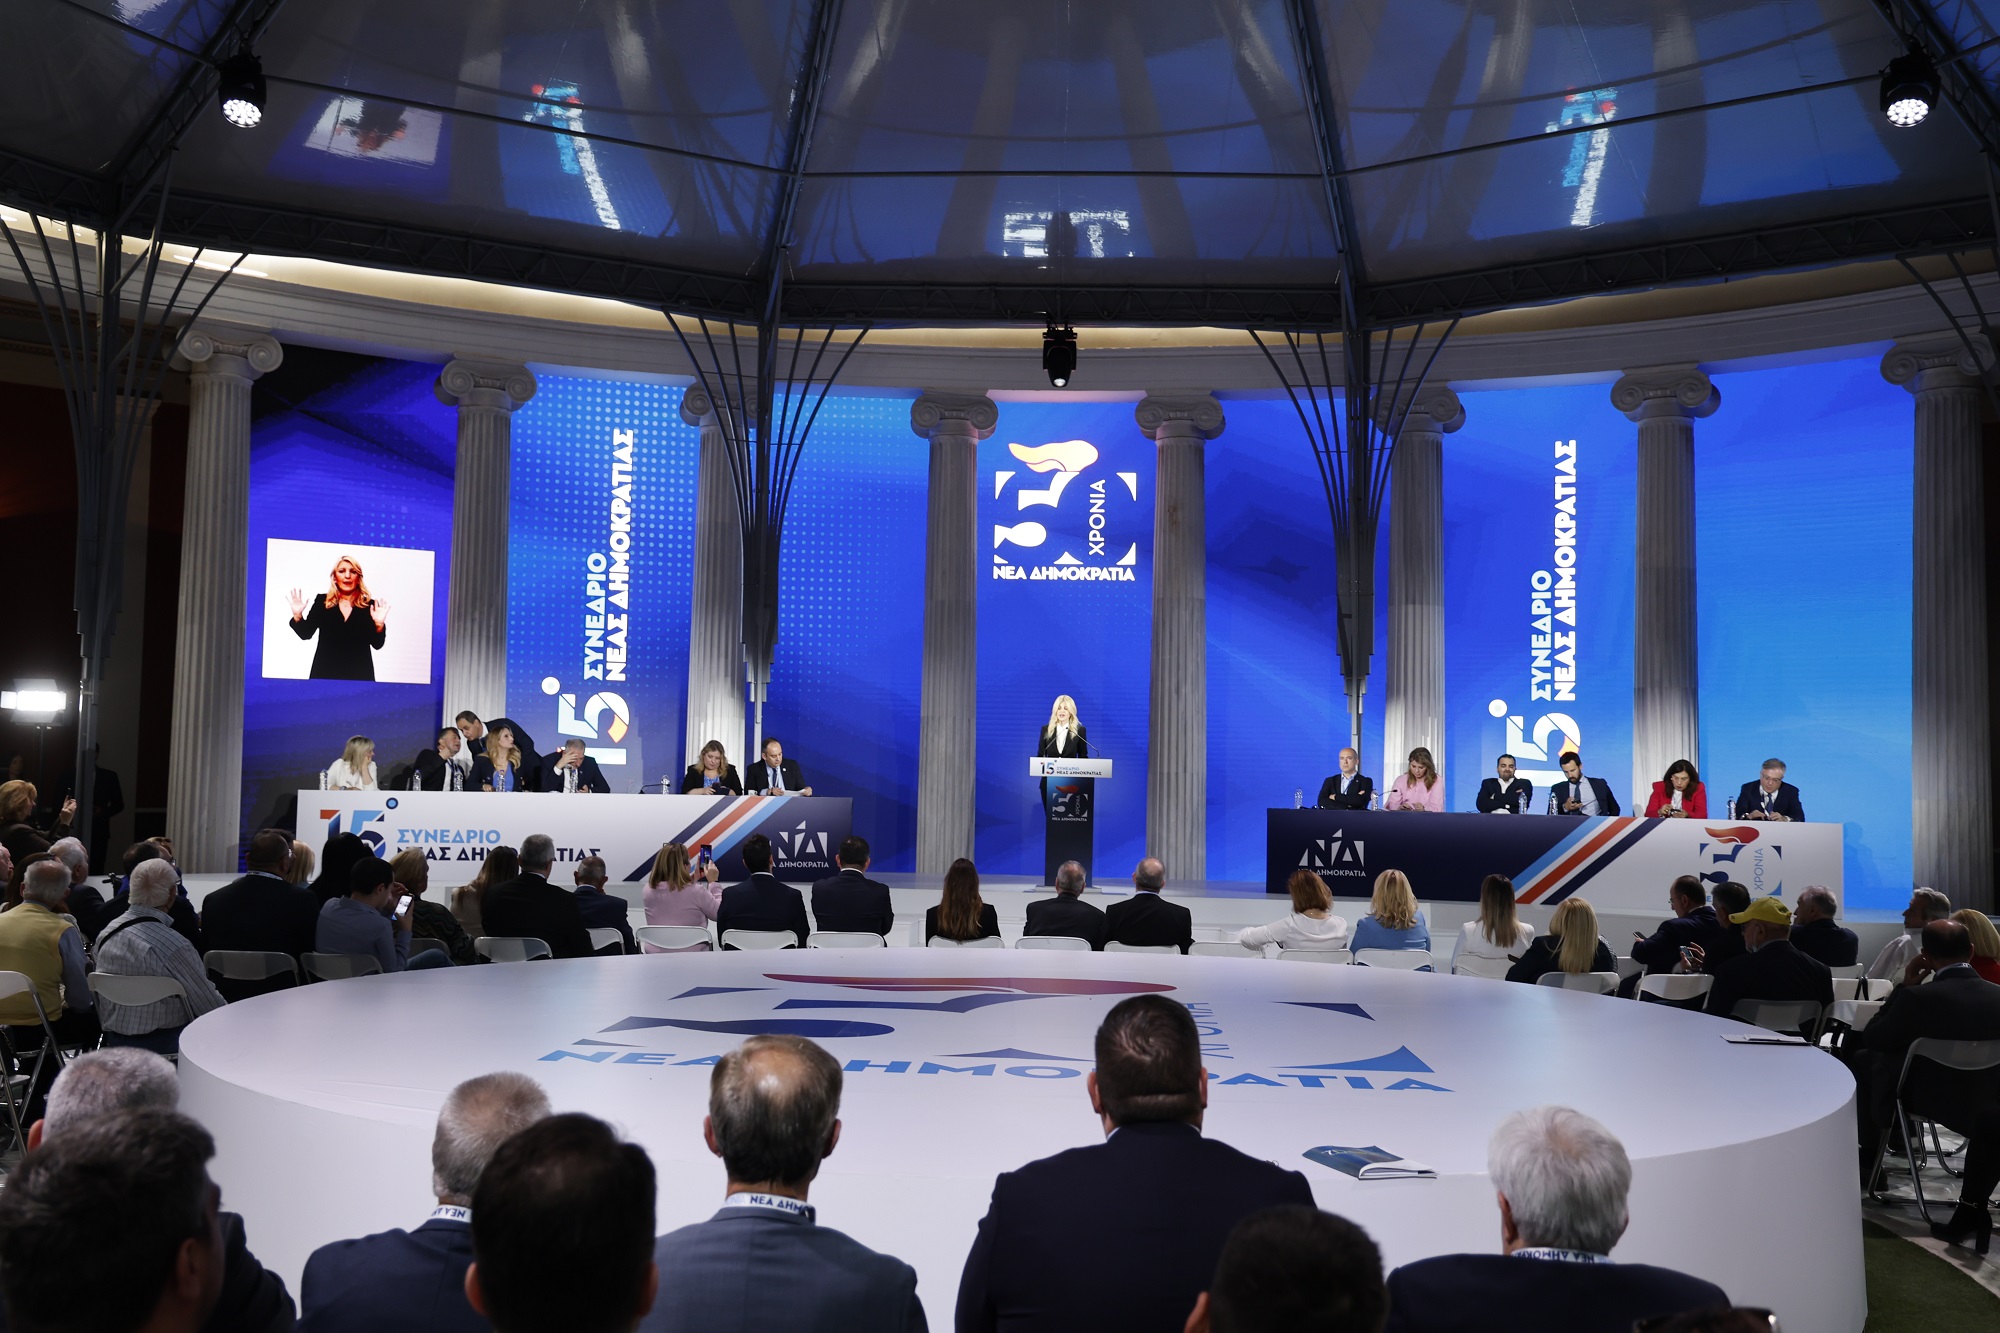 Ζάππειο – 2η μέρα Συνεδρίου ΝΔ: Ευρωεκλογές και οι επόμενες μεταρρυθμίσεις στο επίκεντρο – Ομιλία του Μ. Βέμπερ το μεσημέρι